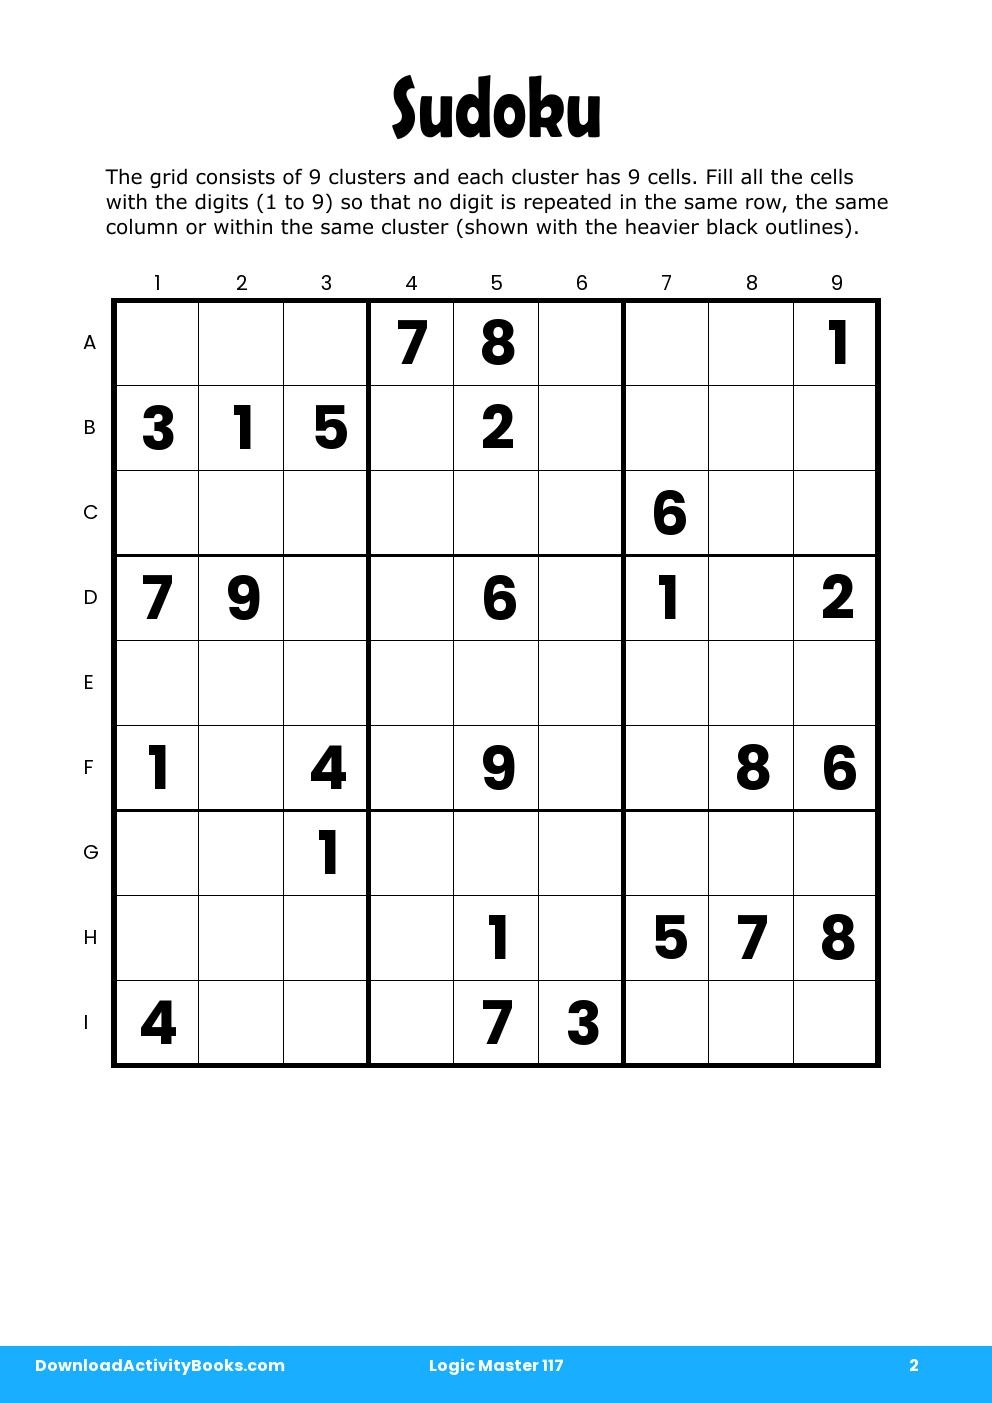 Sudoku in Logic Master 117